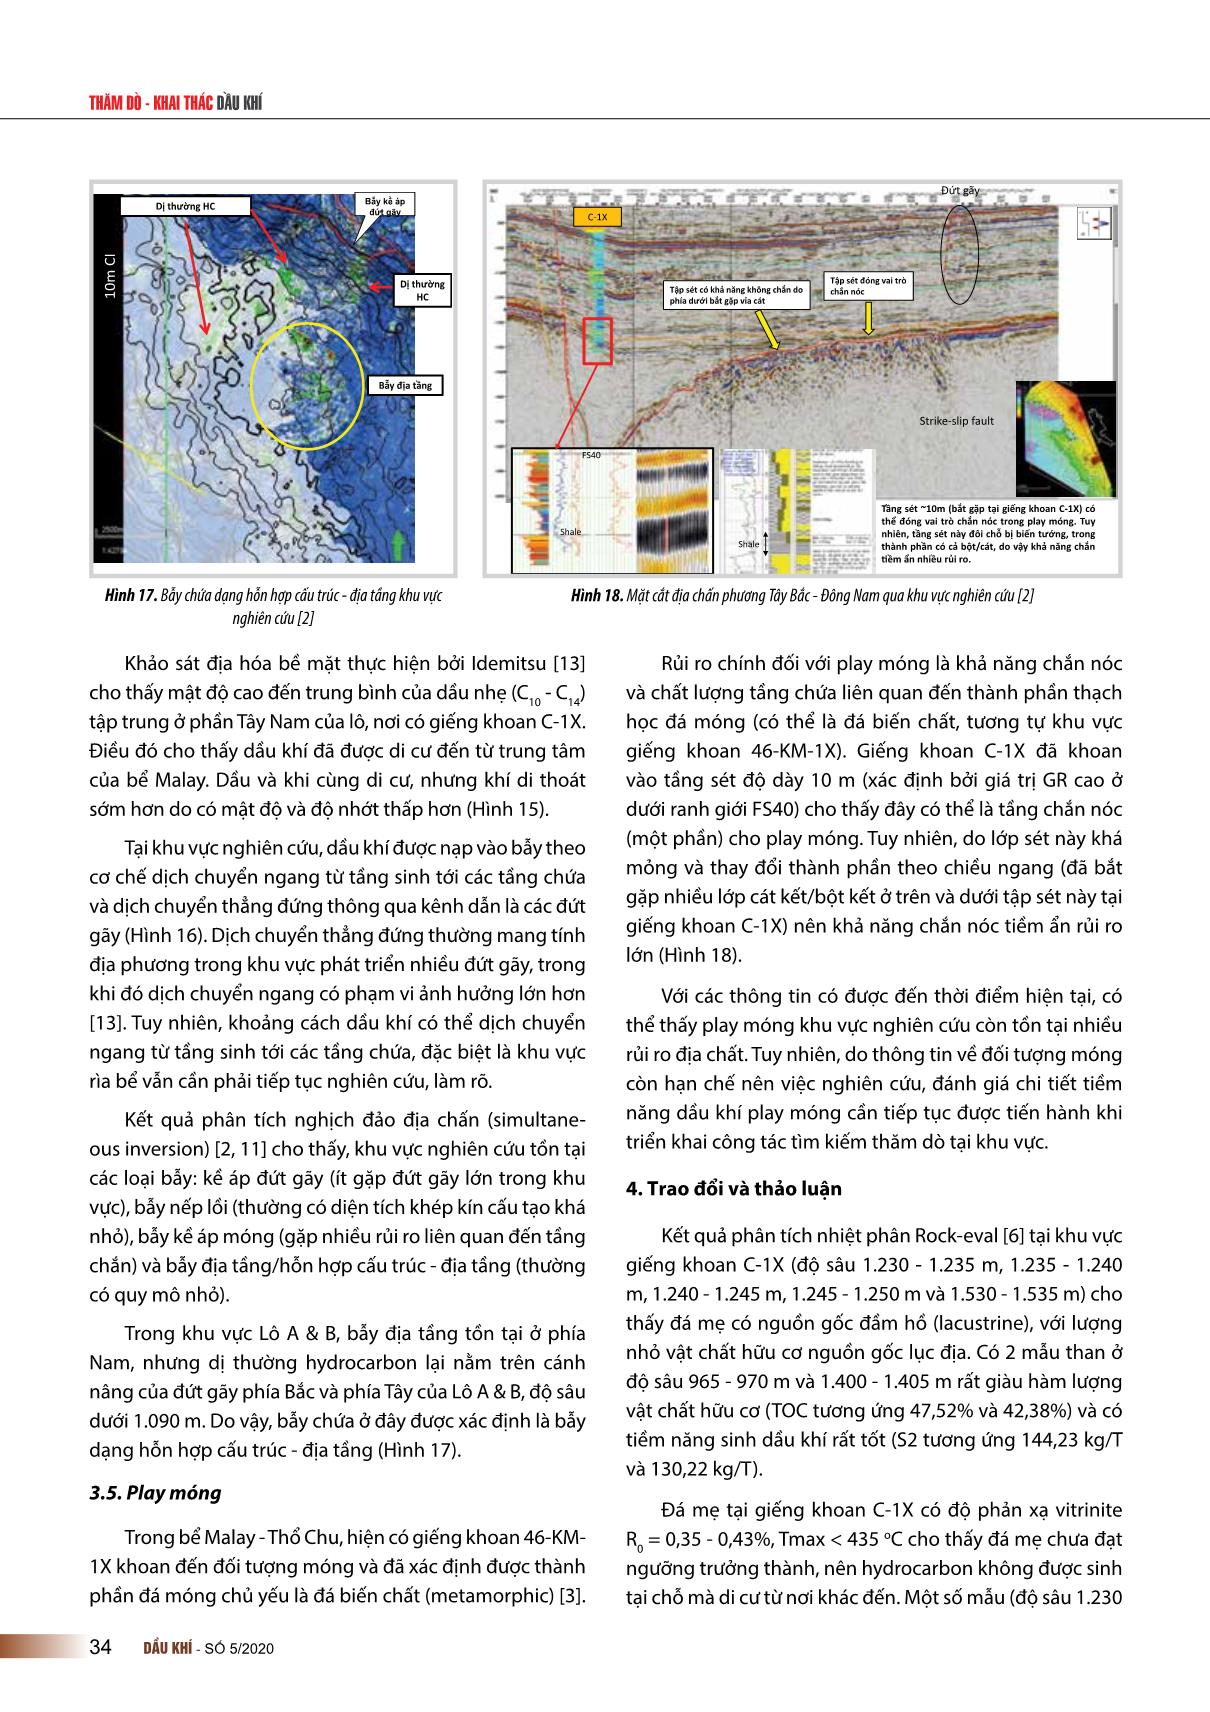 Đặc điểm hệ thống dầu khí khu vực rìa Tây Nam bể trầm tích Malay - Thổ chu, Việt Nam trang 10